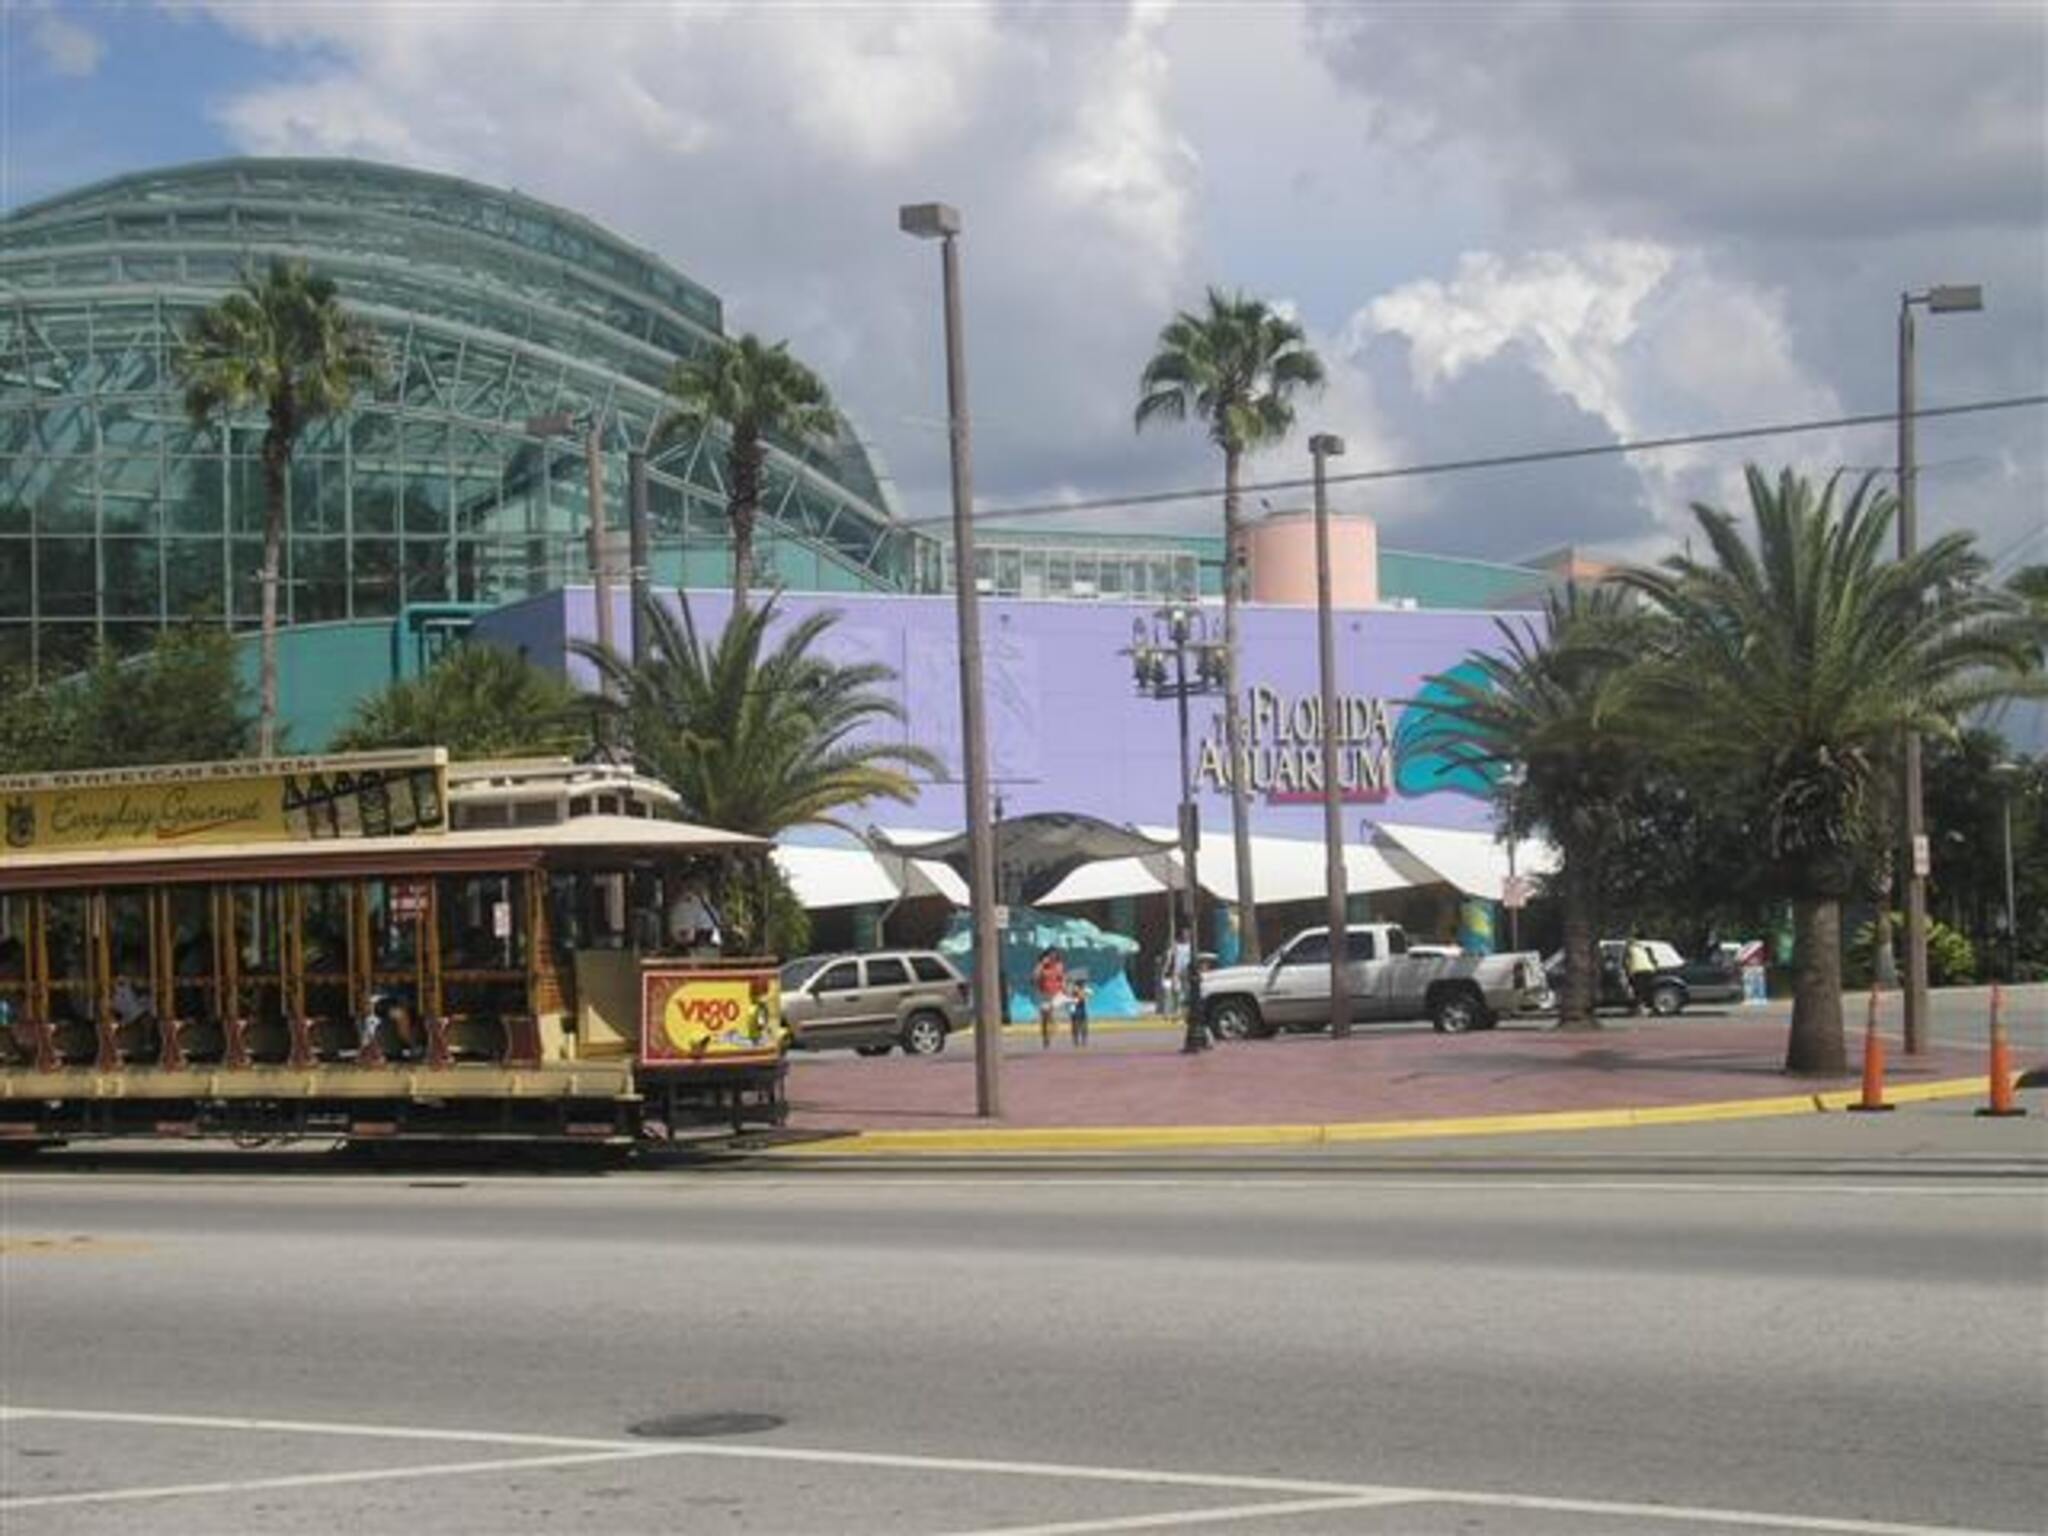 Florida Aquarium exterior with trolley